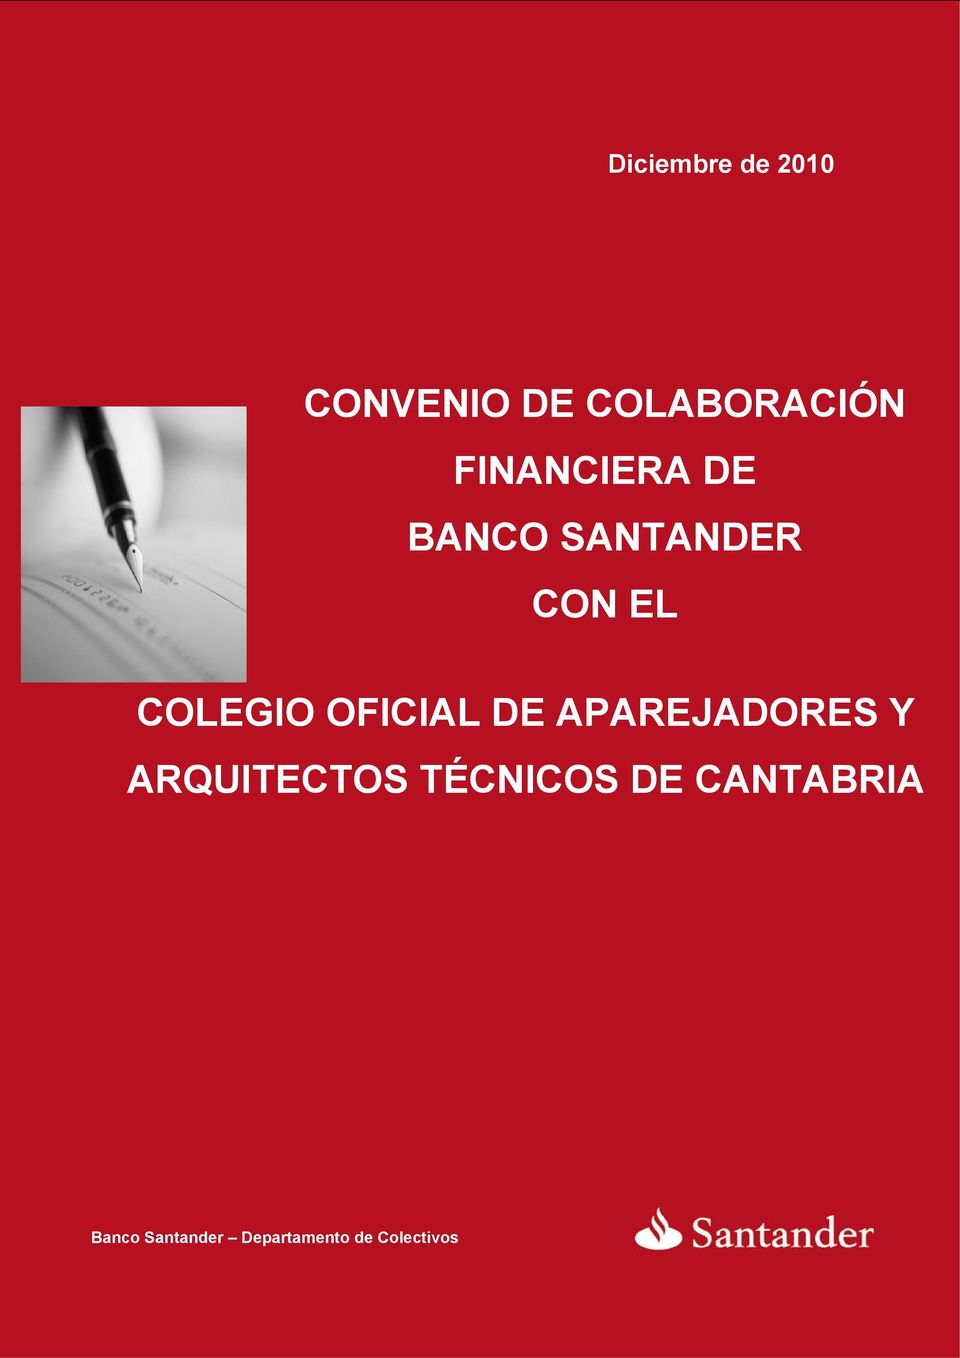 OFICIAL DE APAREJADORES Y Banco Santander